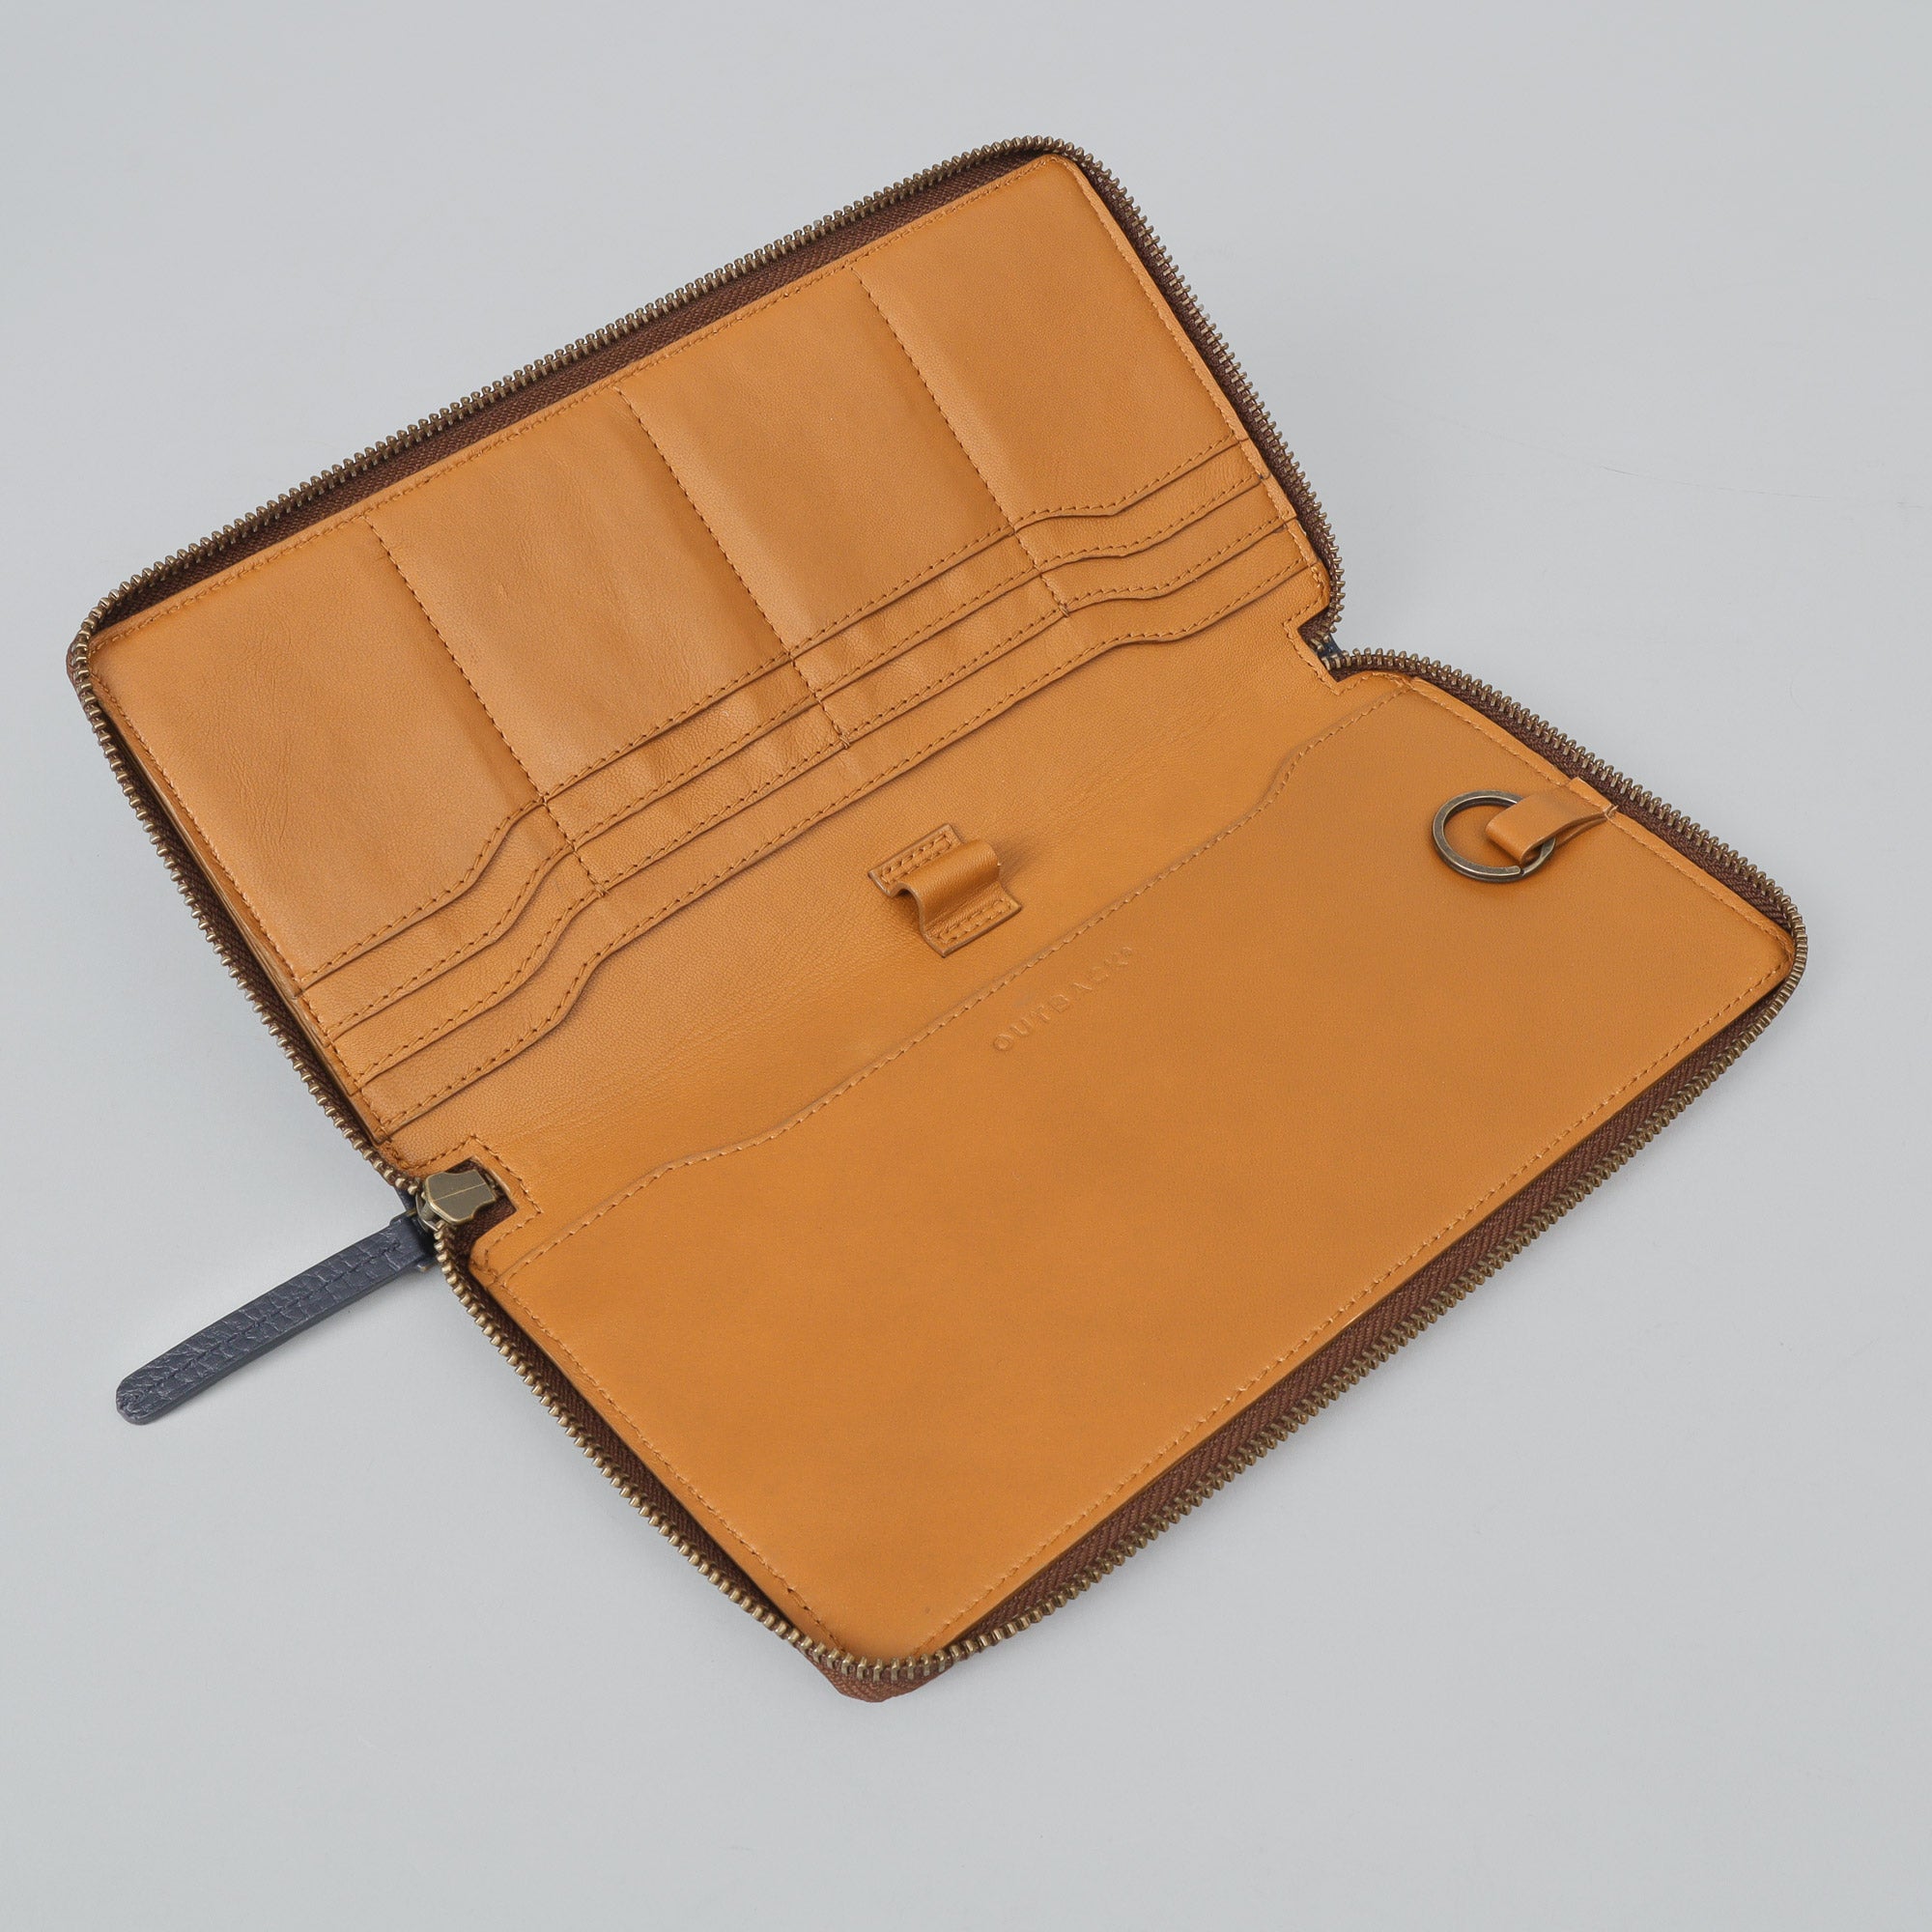 Multicolor chequebook leather wallet